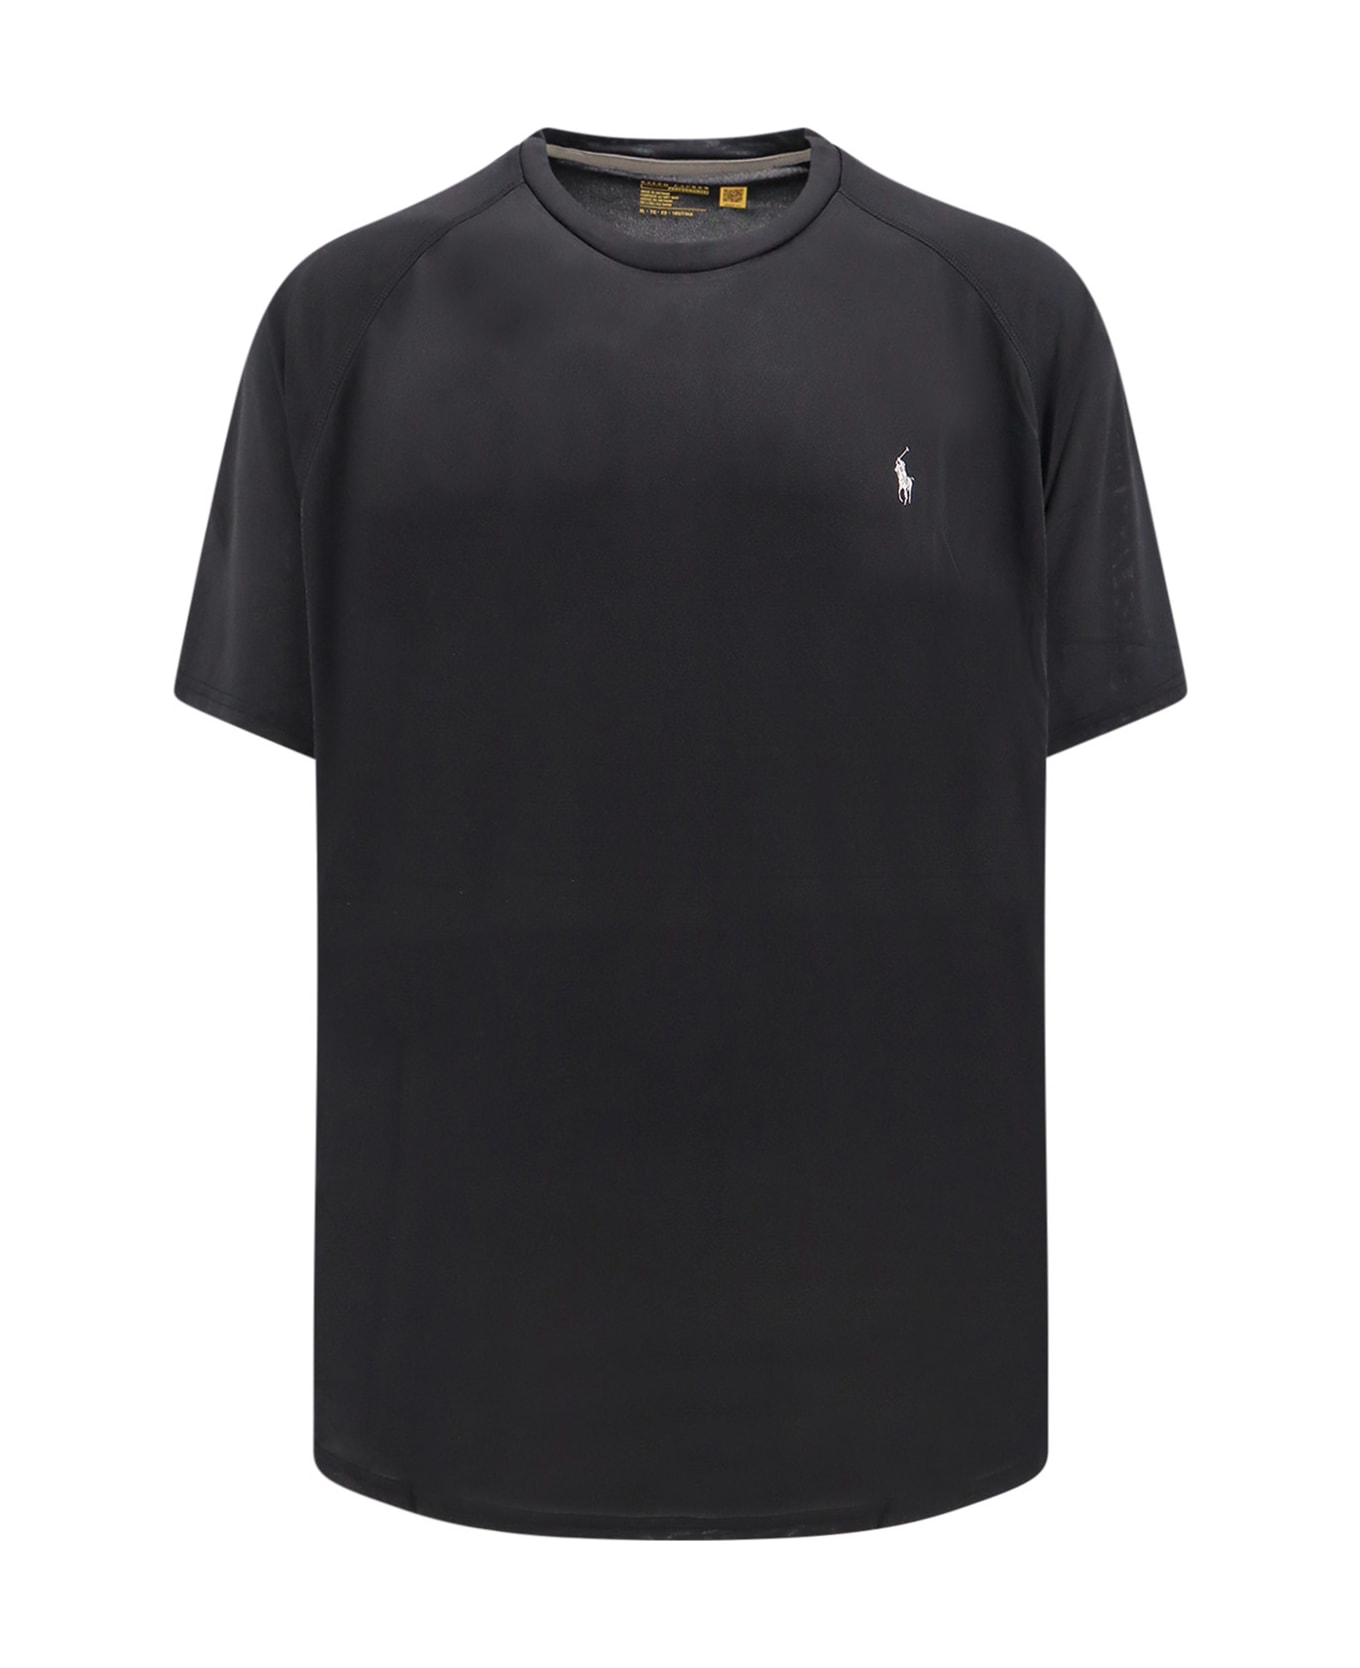 Polo Ralph Lauren T-shirt - Black